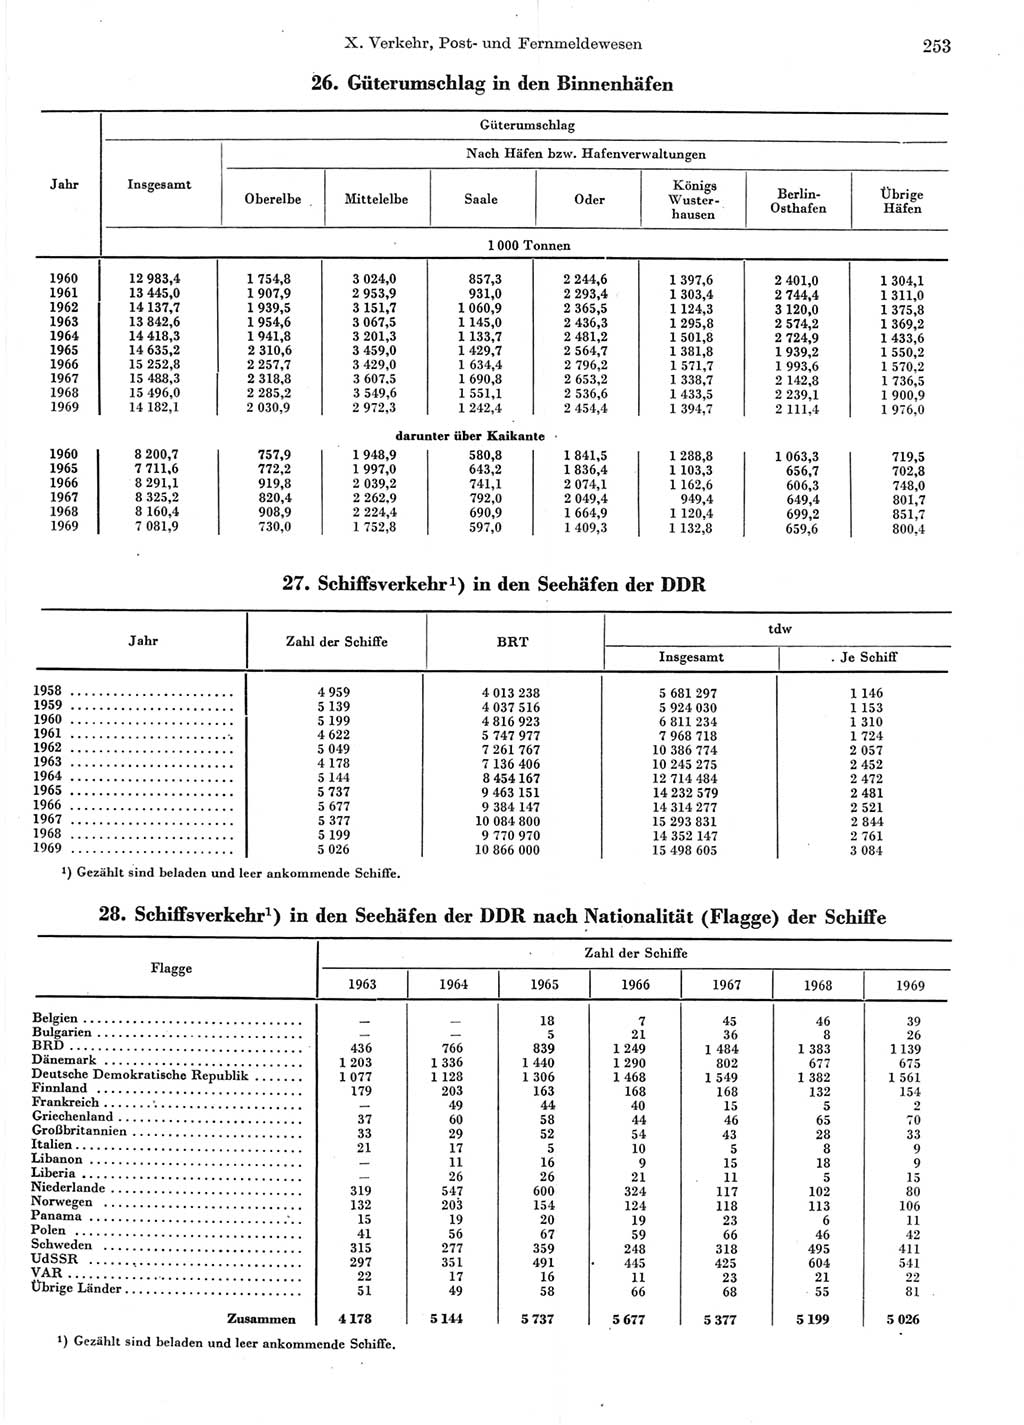 Statistisches Jahrbuch der Deutschen Demokratischen Republik (DDR) 1970, Seite 253 (Stat. Jb. DDR 1970, S. 253)